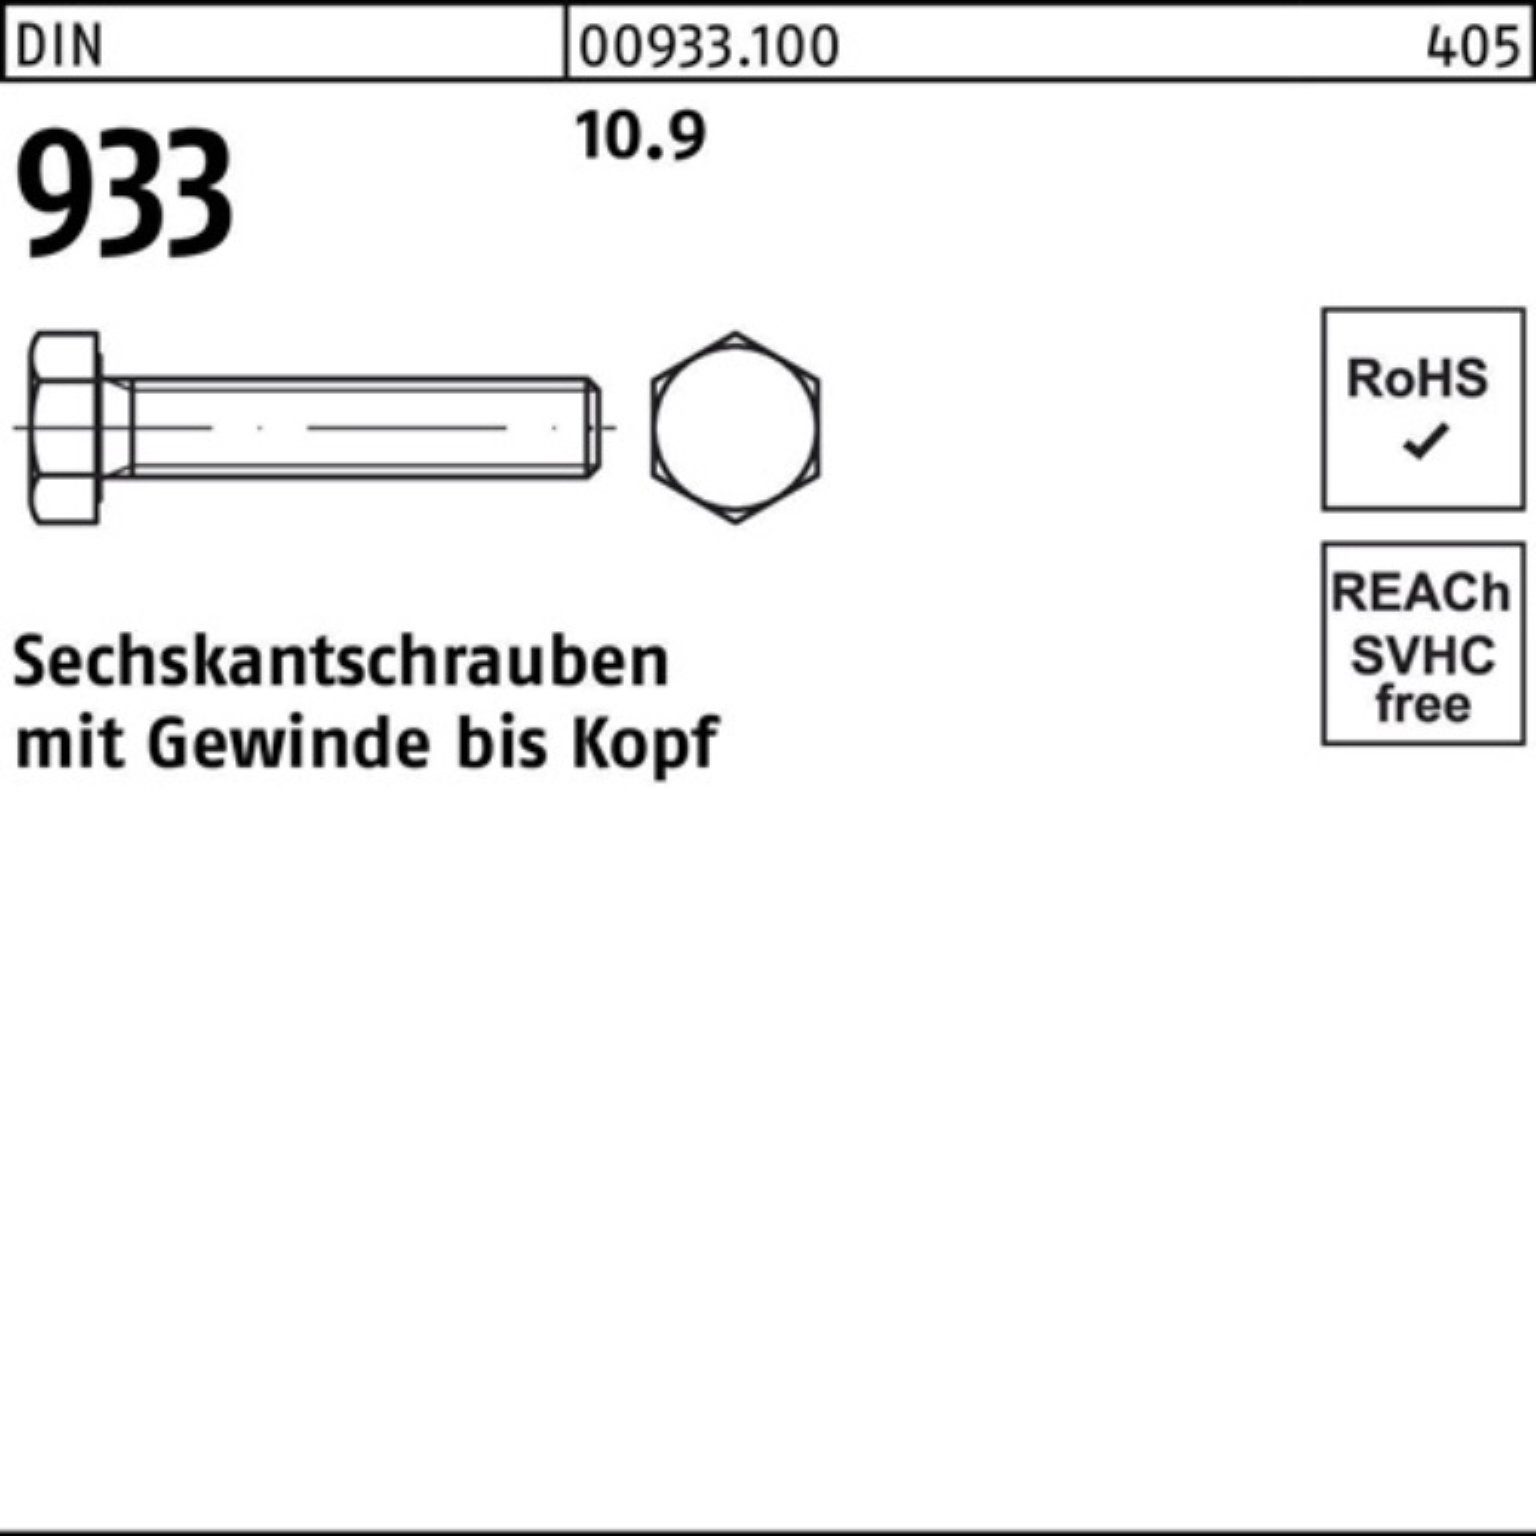 Reyher Sechskantschraube 200er 10.9 Sechskantschraube VG Stück Pack 933 DIN 200 933 25 DIN M8x